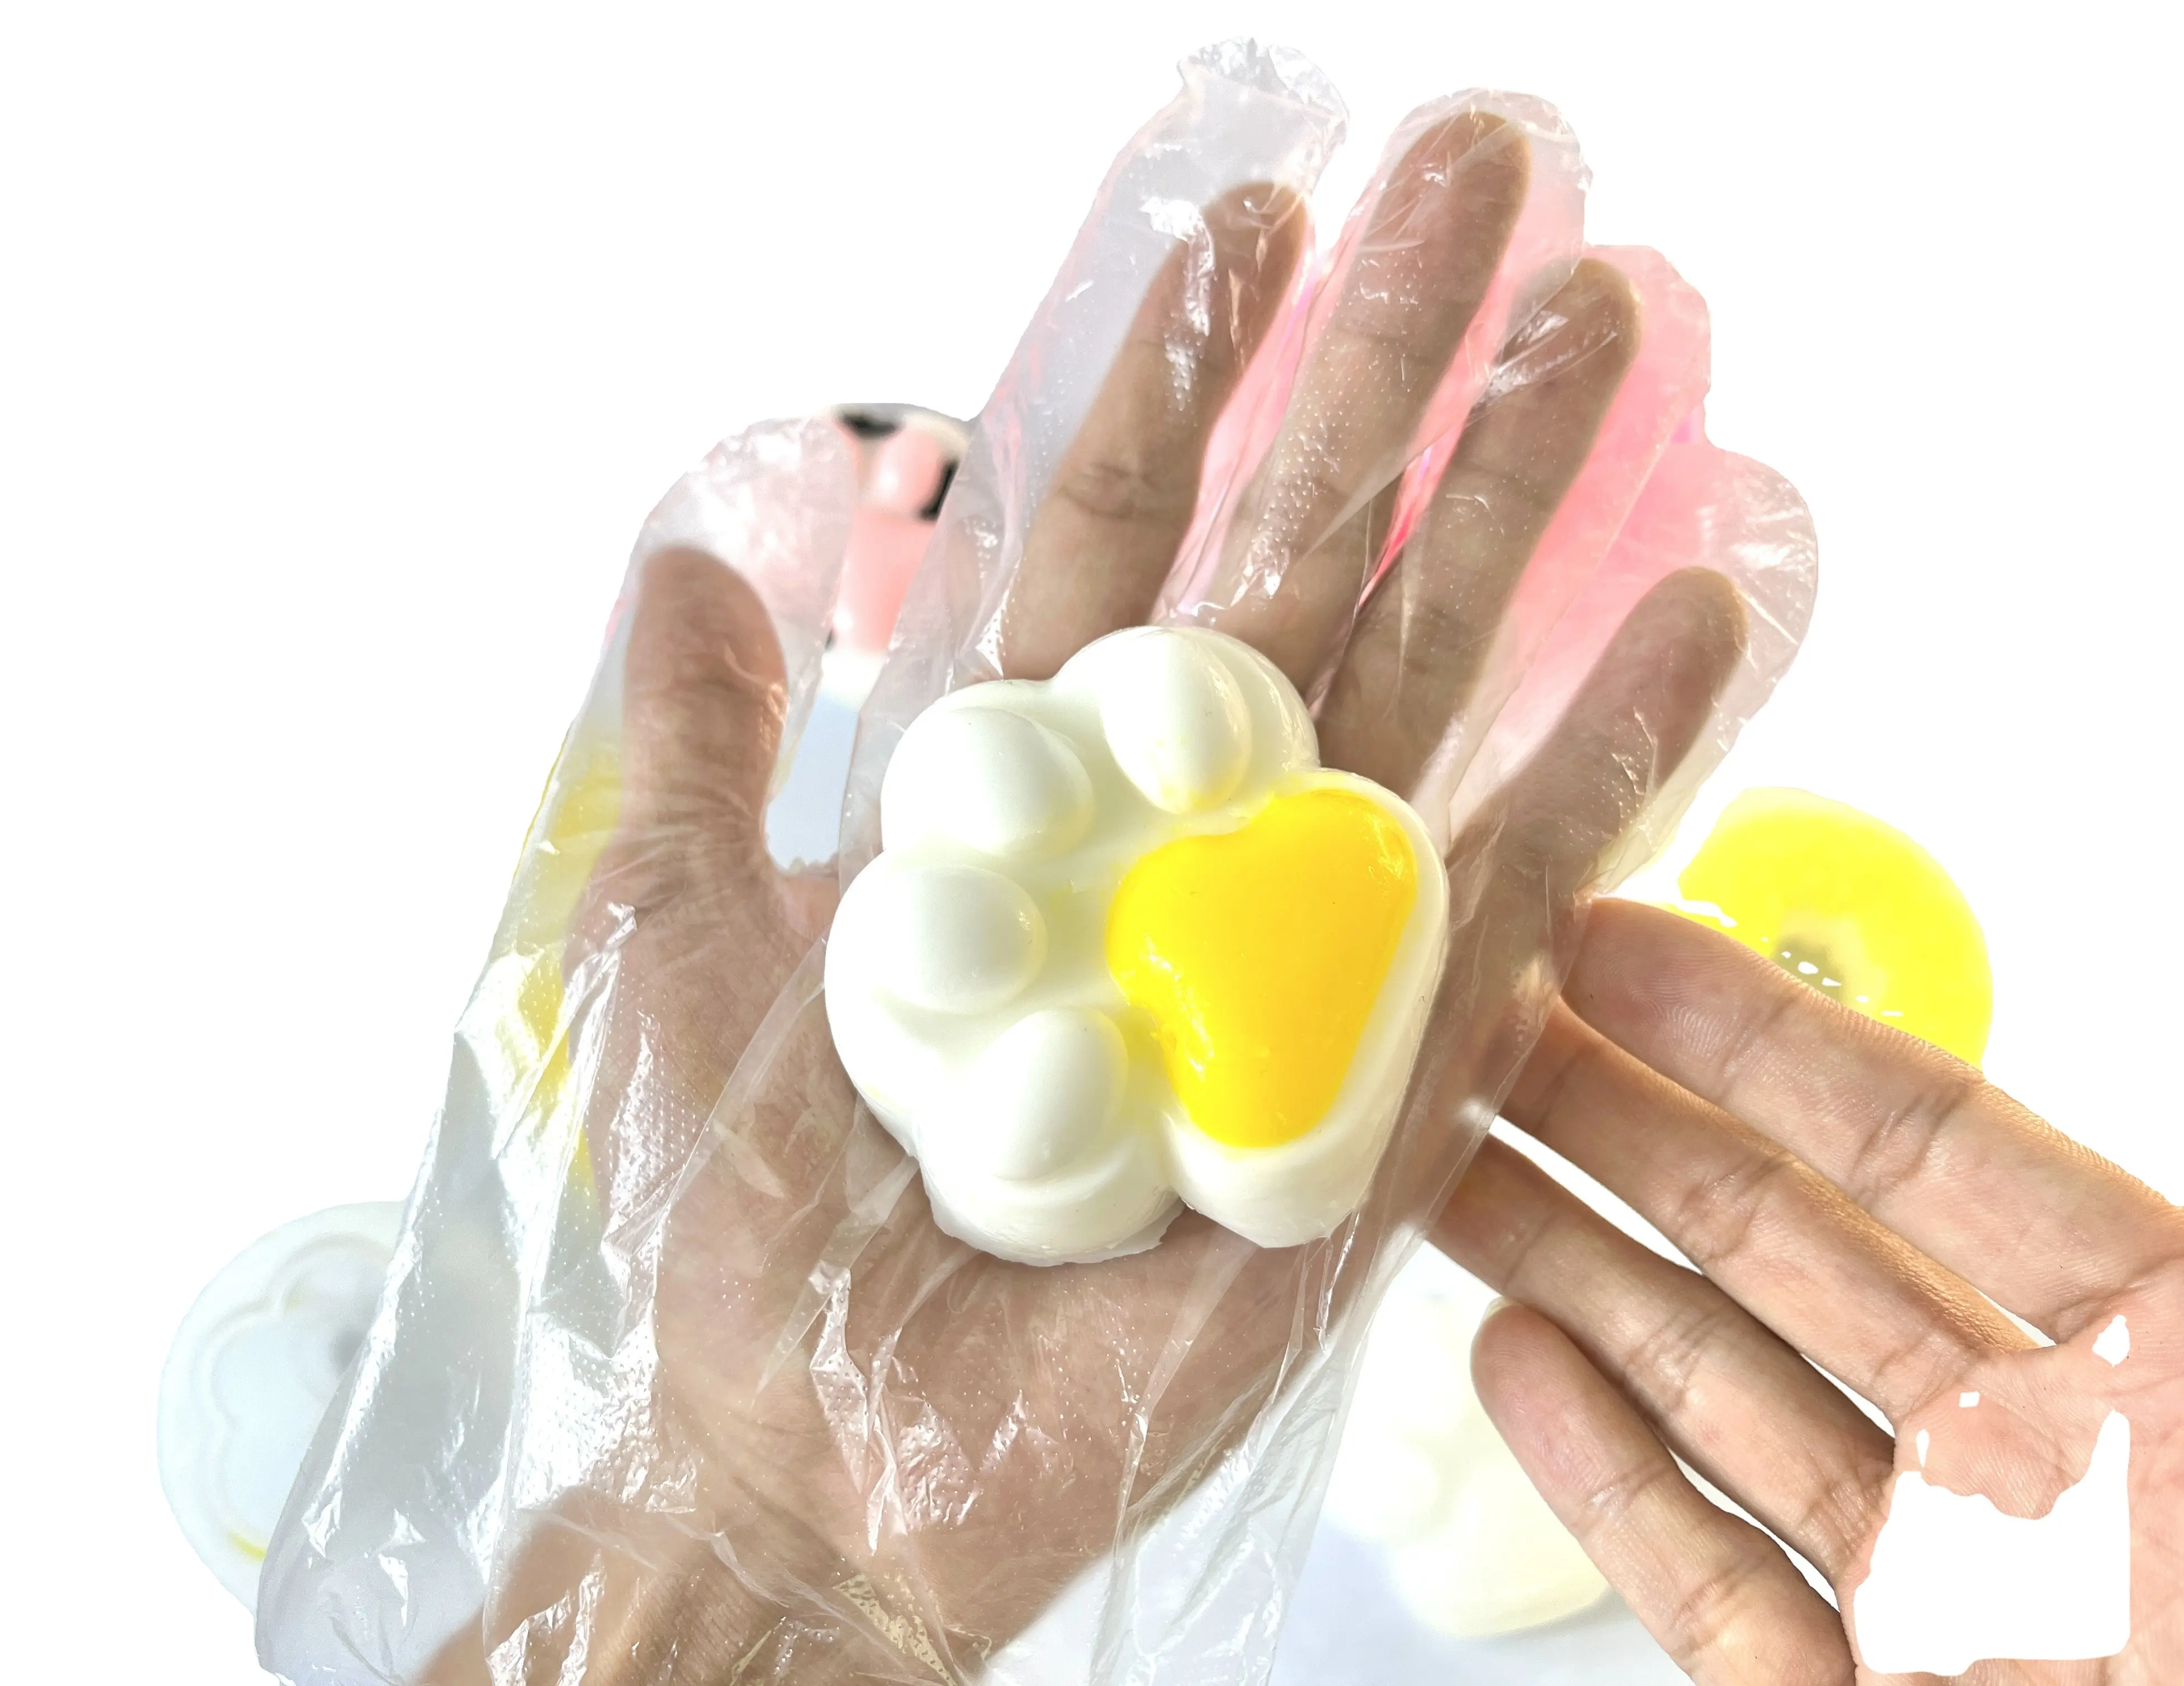 Sıcak satış reçine balçık toksik olmayan meyve yumurta balçık renk kristal çamur DIY macun jöle balçık oyuncak kız erkek için